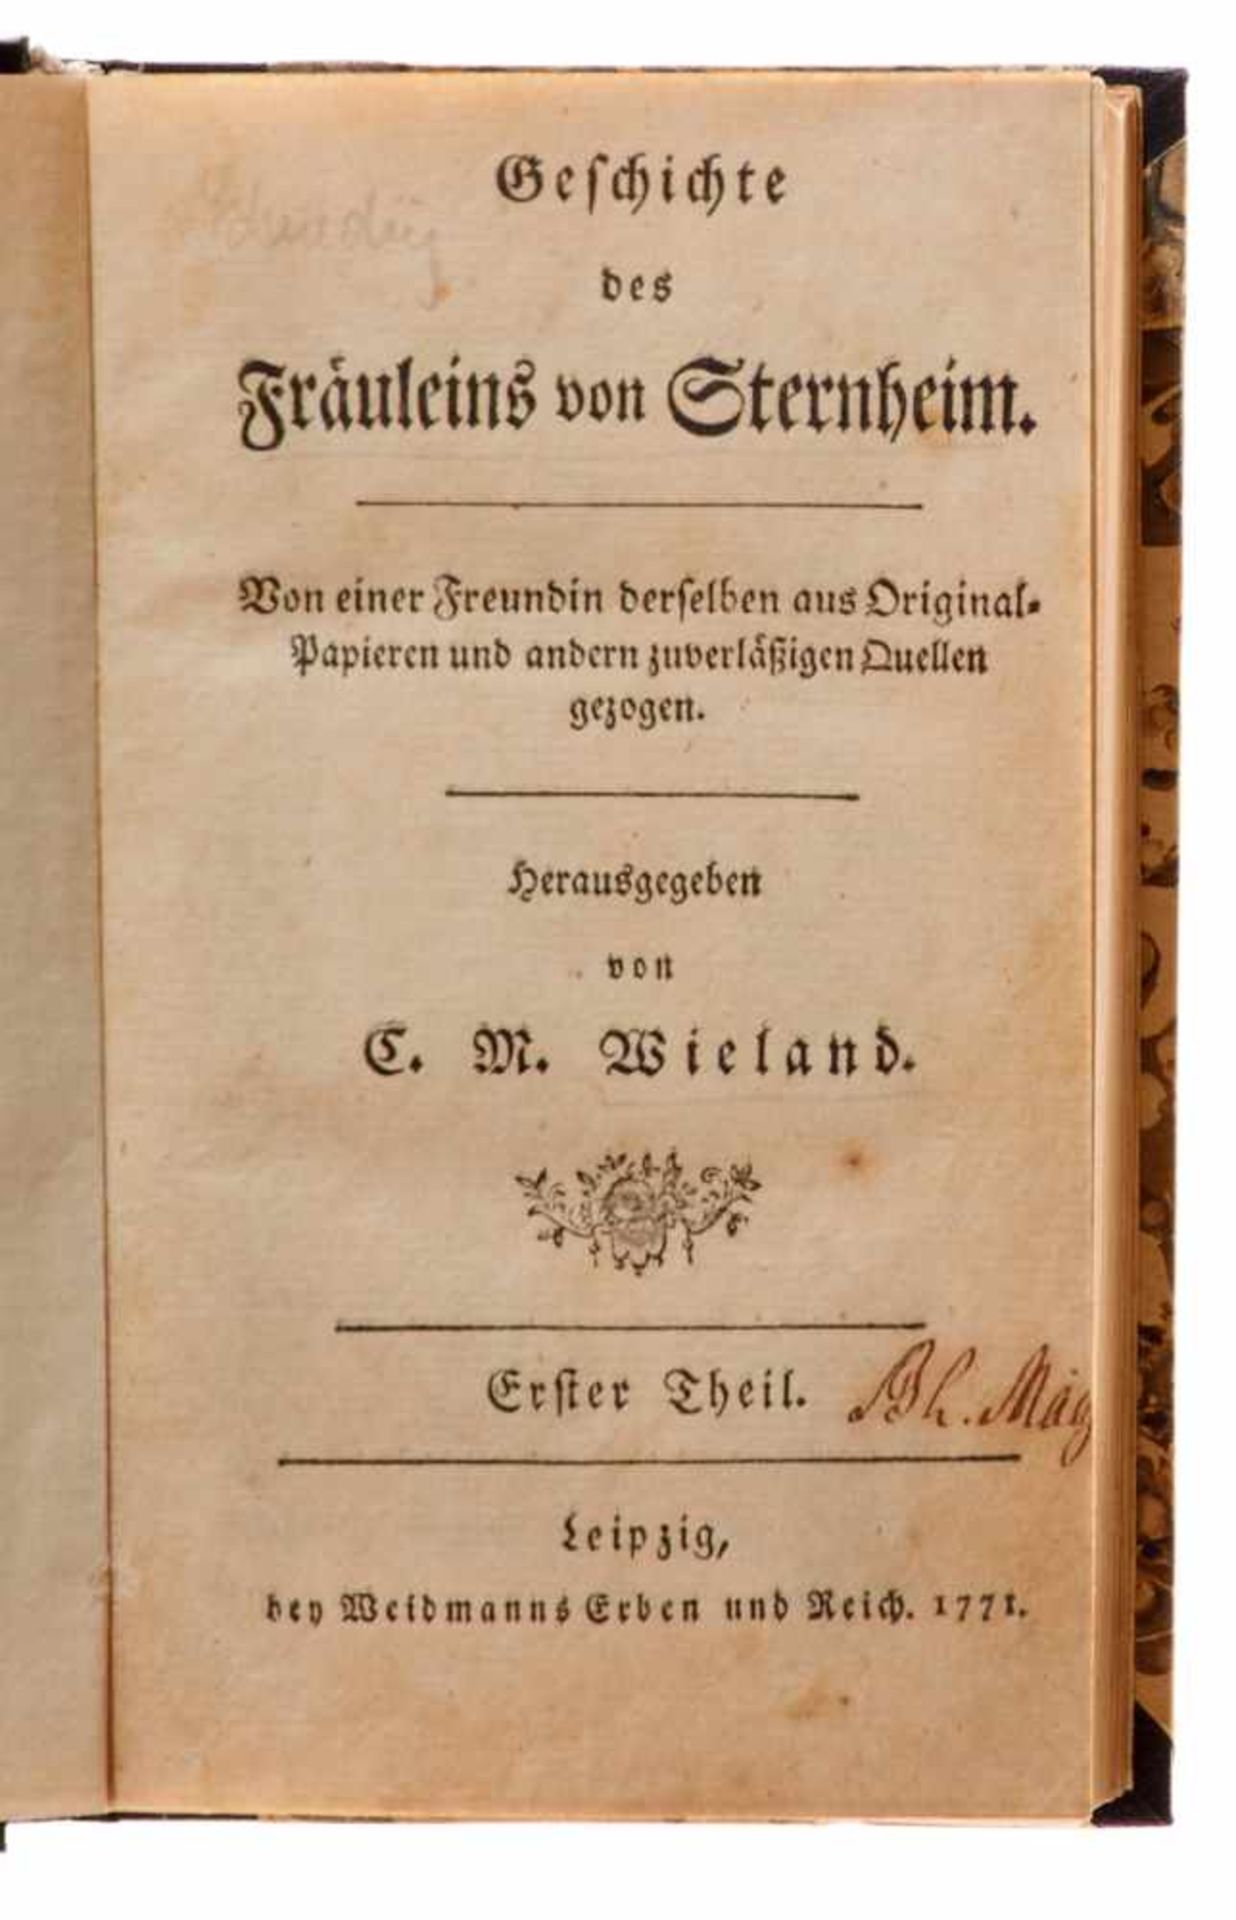 (La Roche, Sophie von), Geschichte des Fräuleins von Sternheim. Hrsg. vonCh. M. Wieland. 2 Tle. in - Bild 2 aus 2